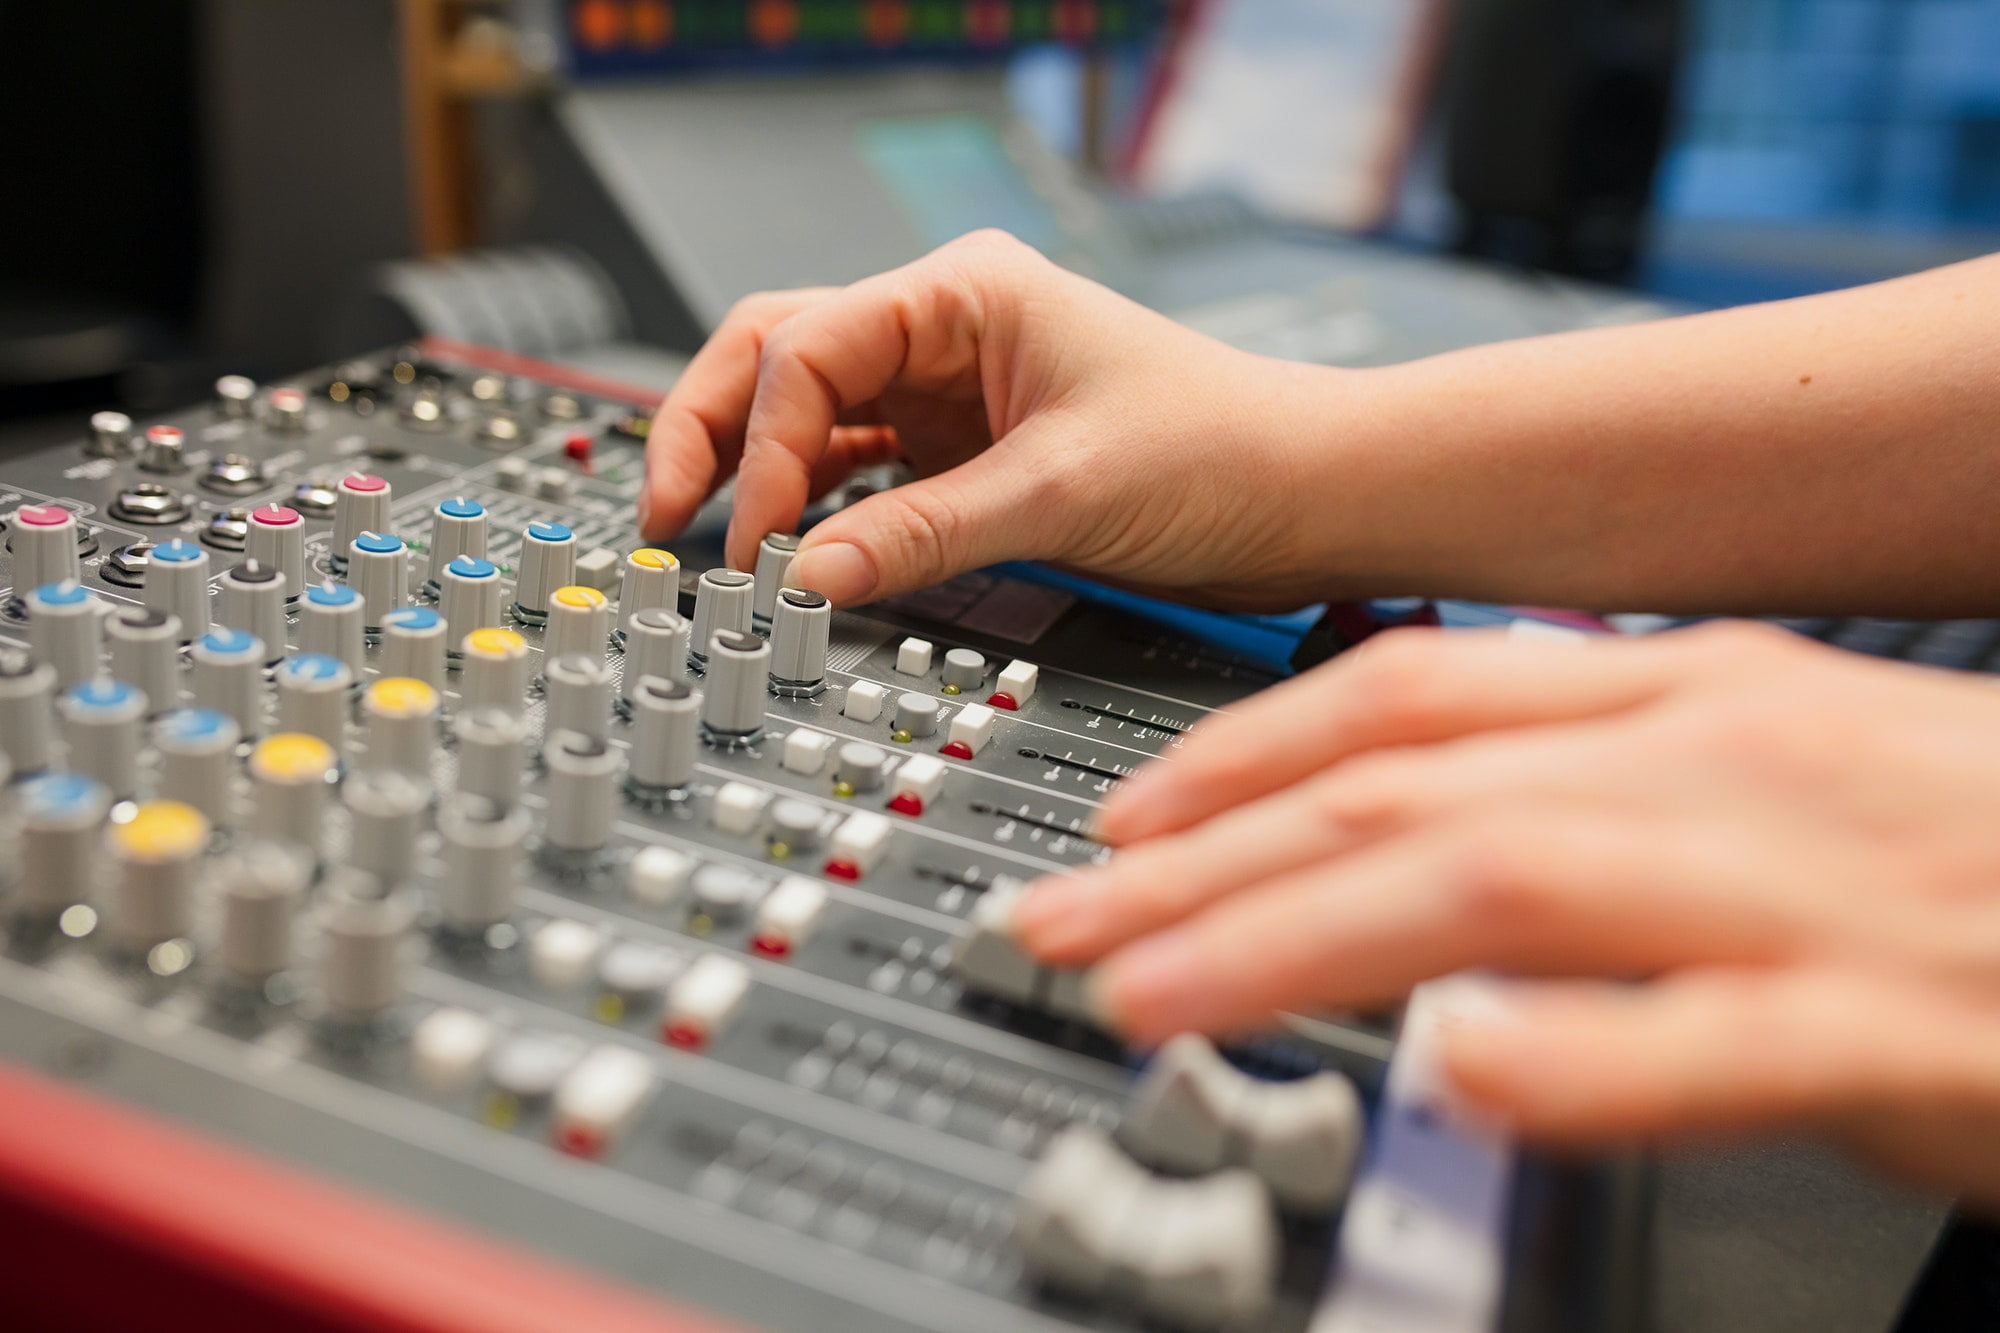 Female Radio Host Using Music Mixer In Studio